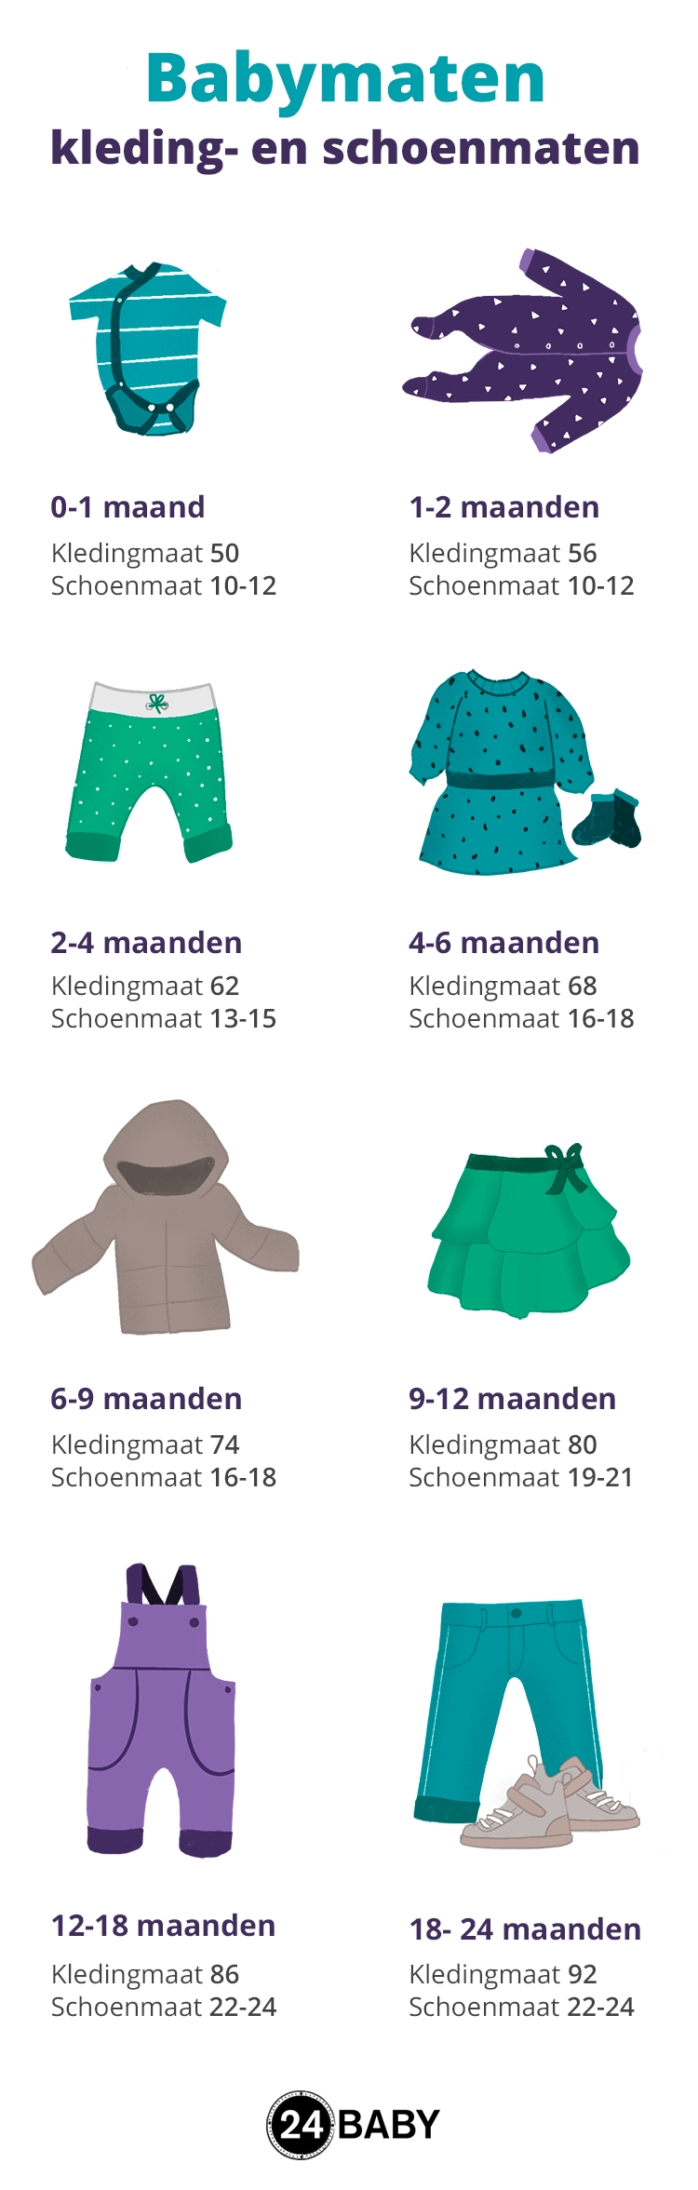 Verrassend genoeg uitdrukking Onbelangrijk Babymaten – van kledingmaat tot schoenmaat – 24Baby.nl